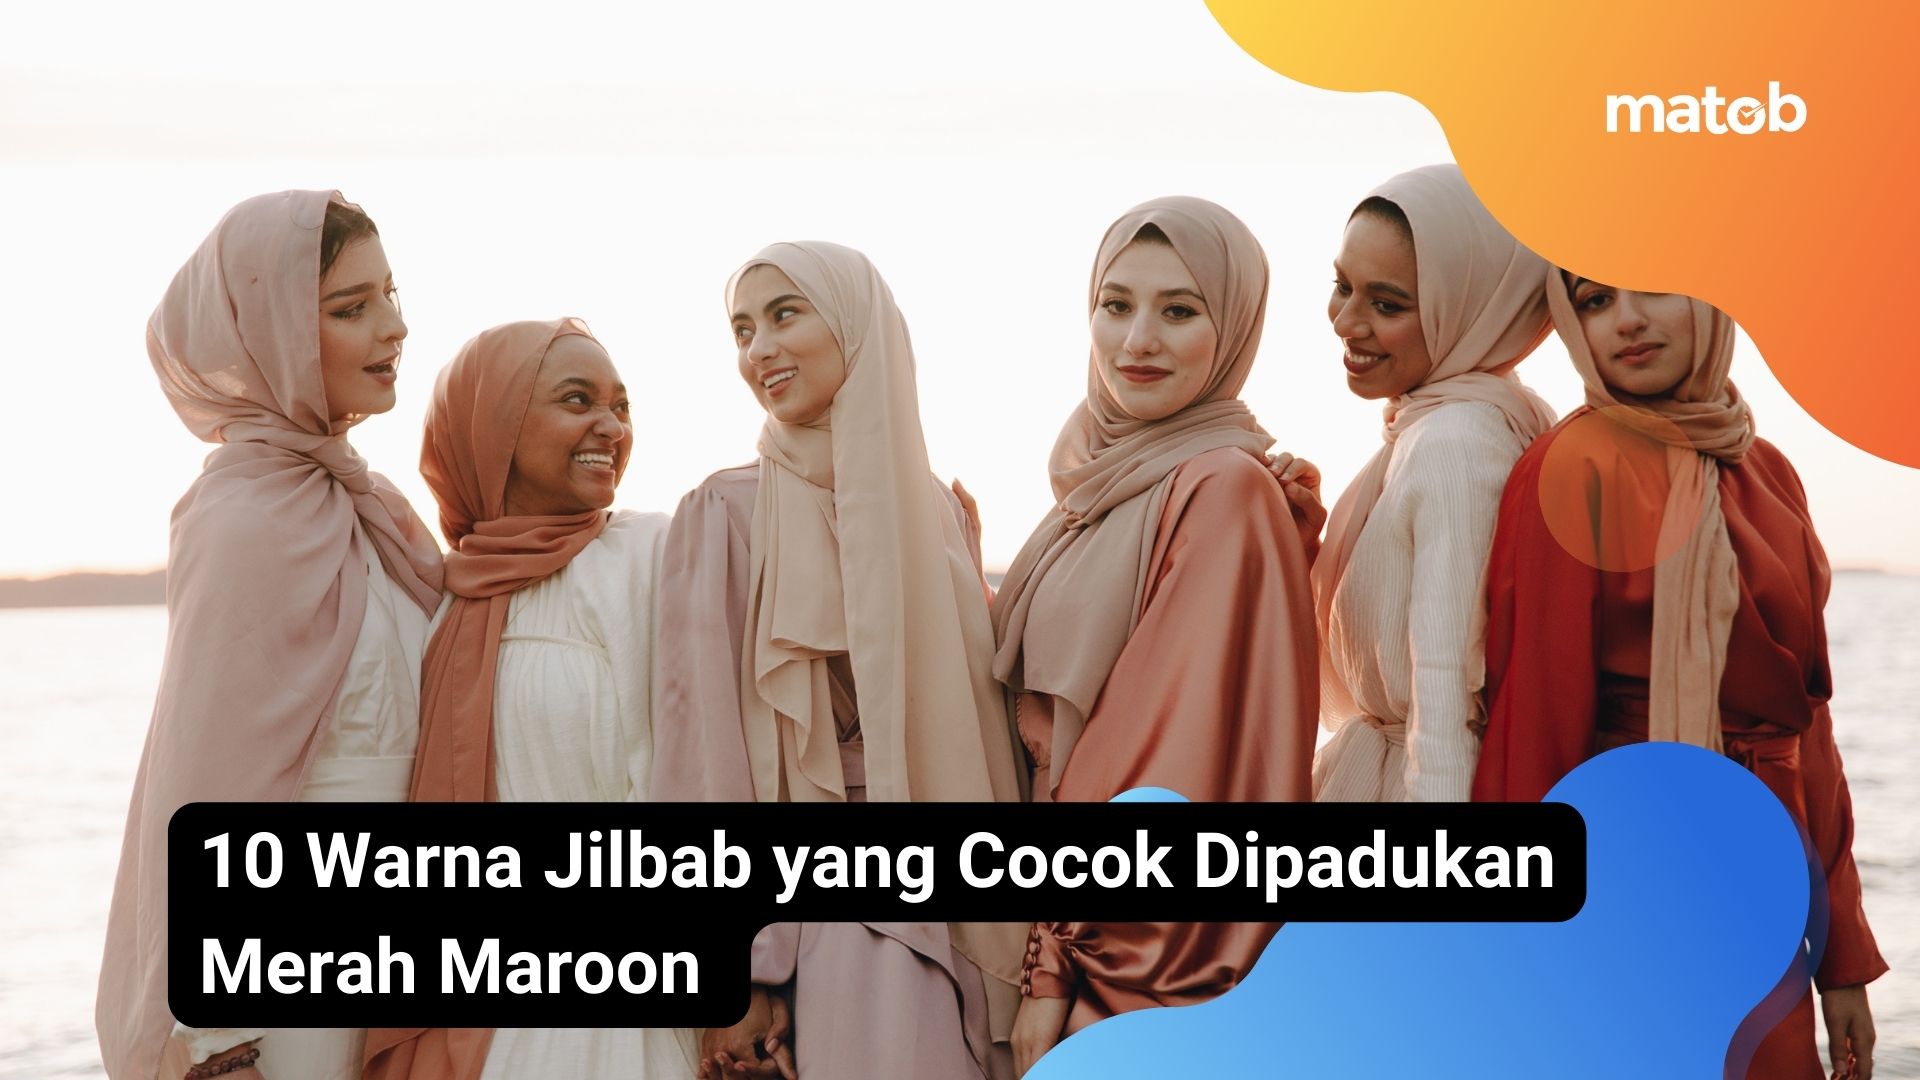 10 Warna Jilbab yang Cocok Dipadukan Merah Maroon